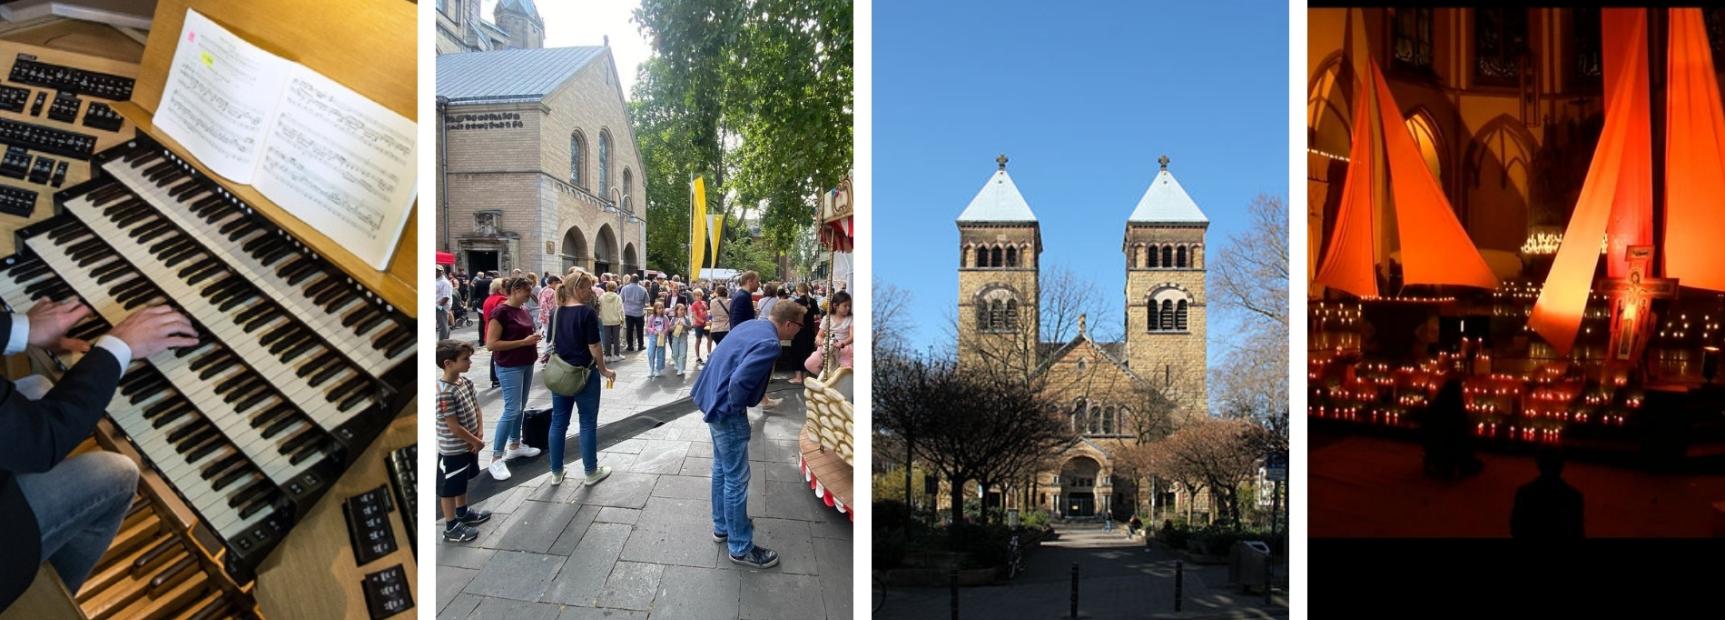 Katholische Kirche in Köln-Mitte: